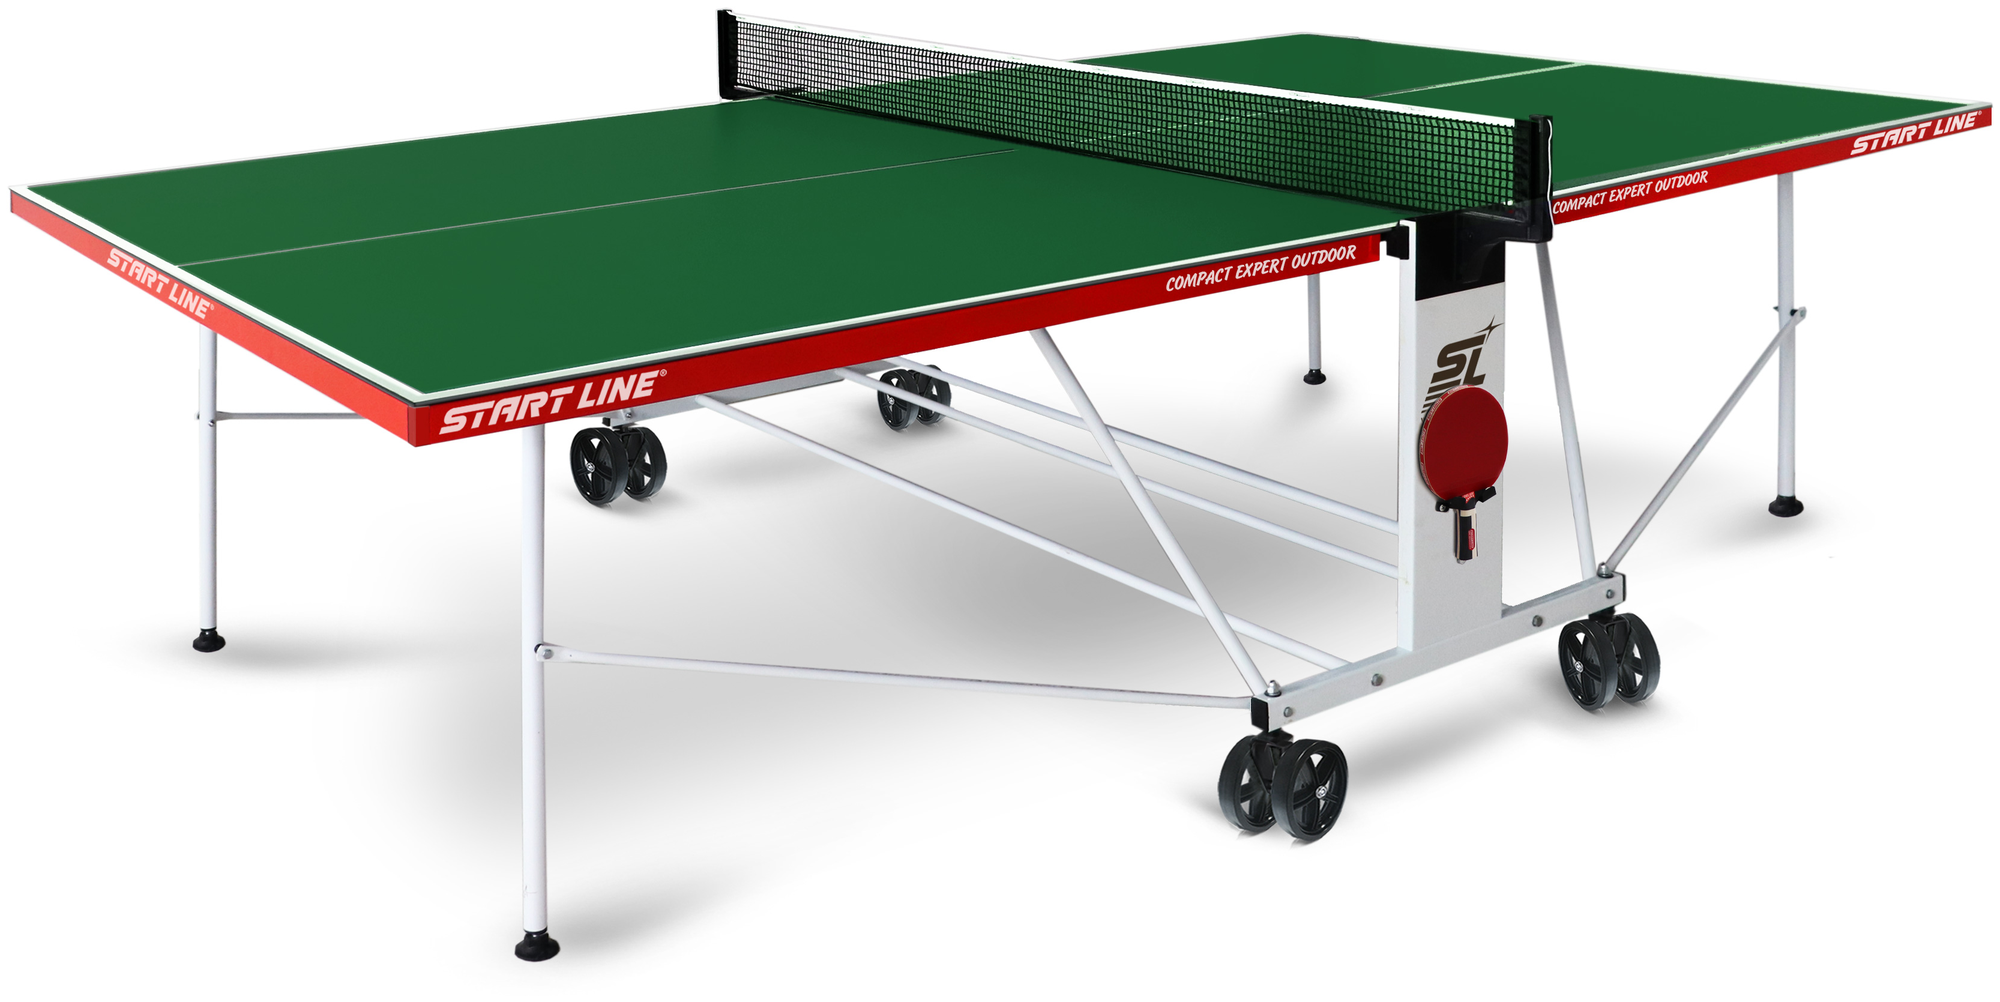 Теннисный стол Start Line Compact Expert Outdoor green любительский, всепогодный, с встроенной сеткой